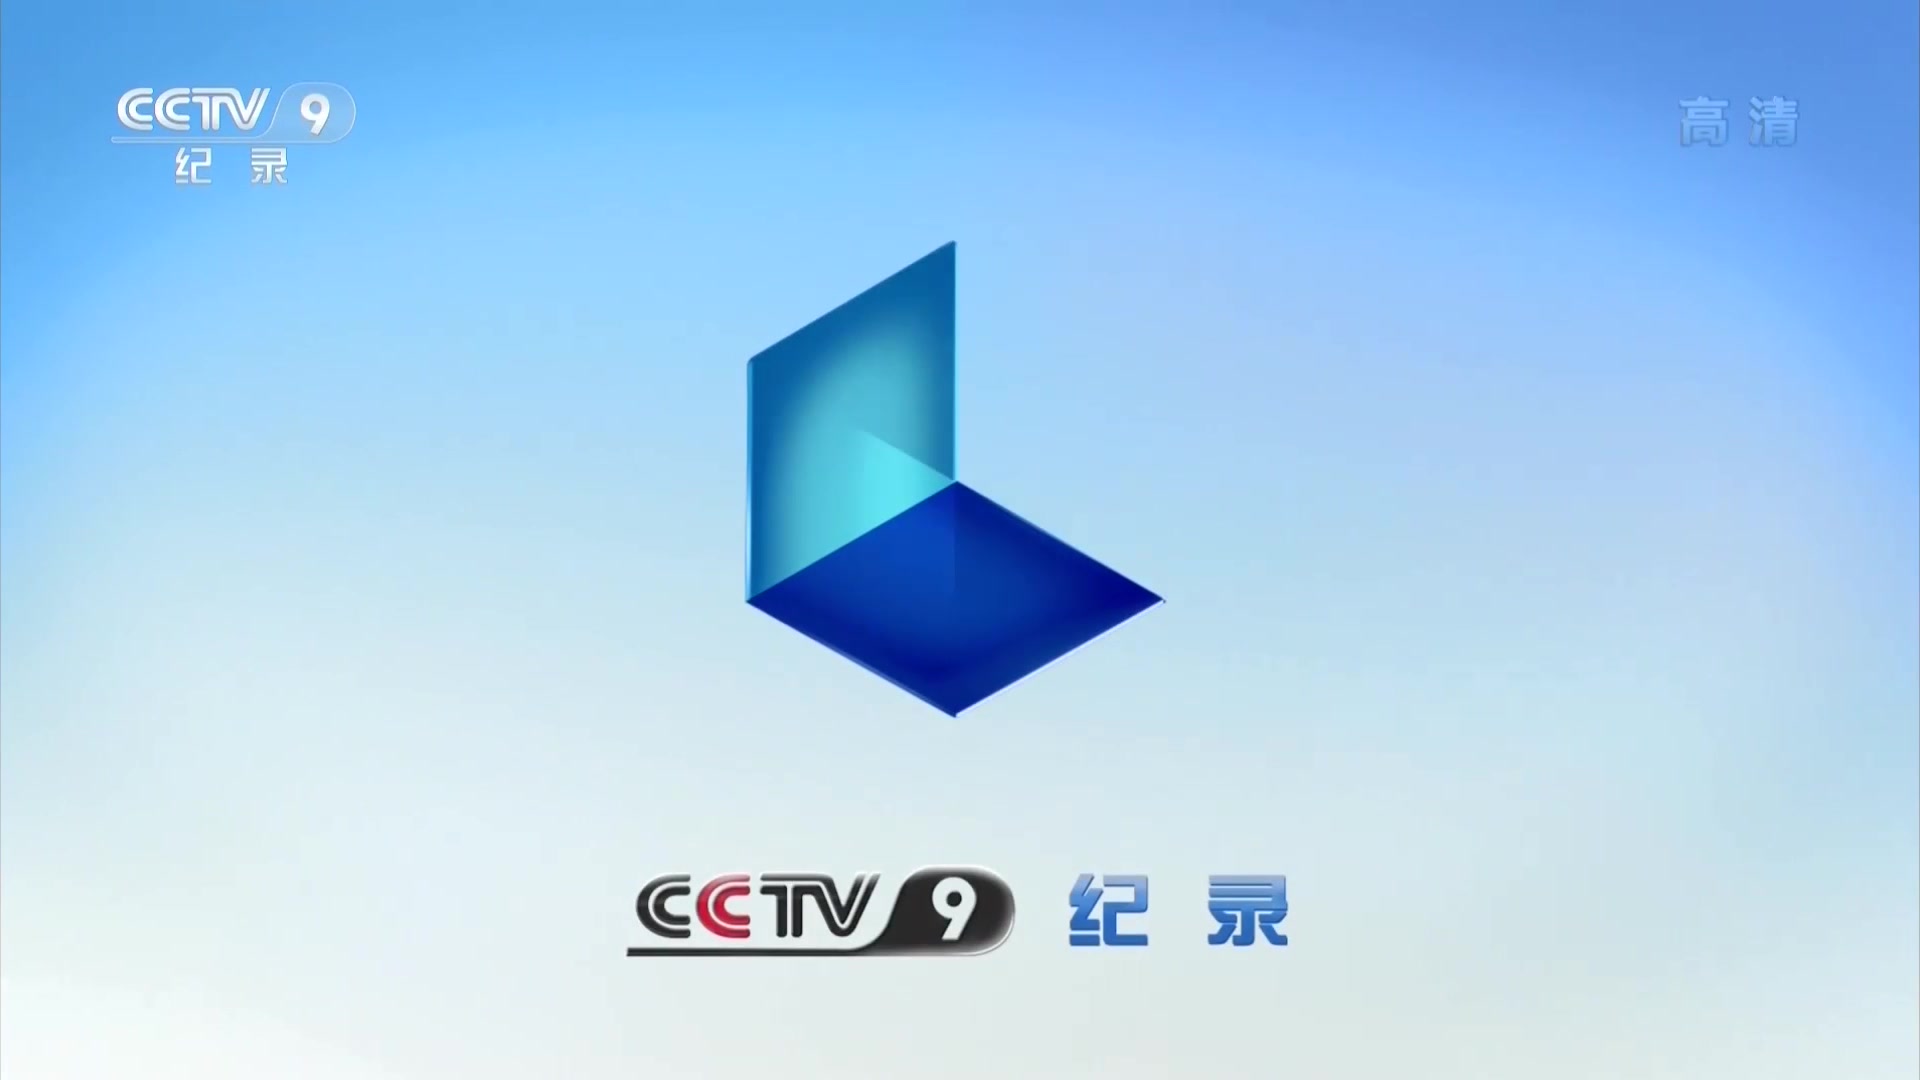 中央电视台纪录频道2012年频道id_广告_广告_bilibili